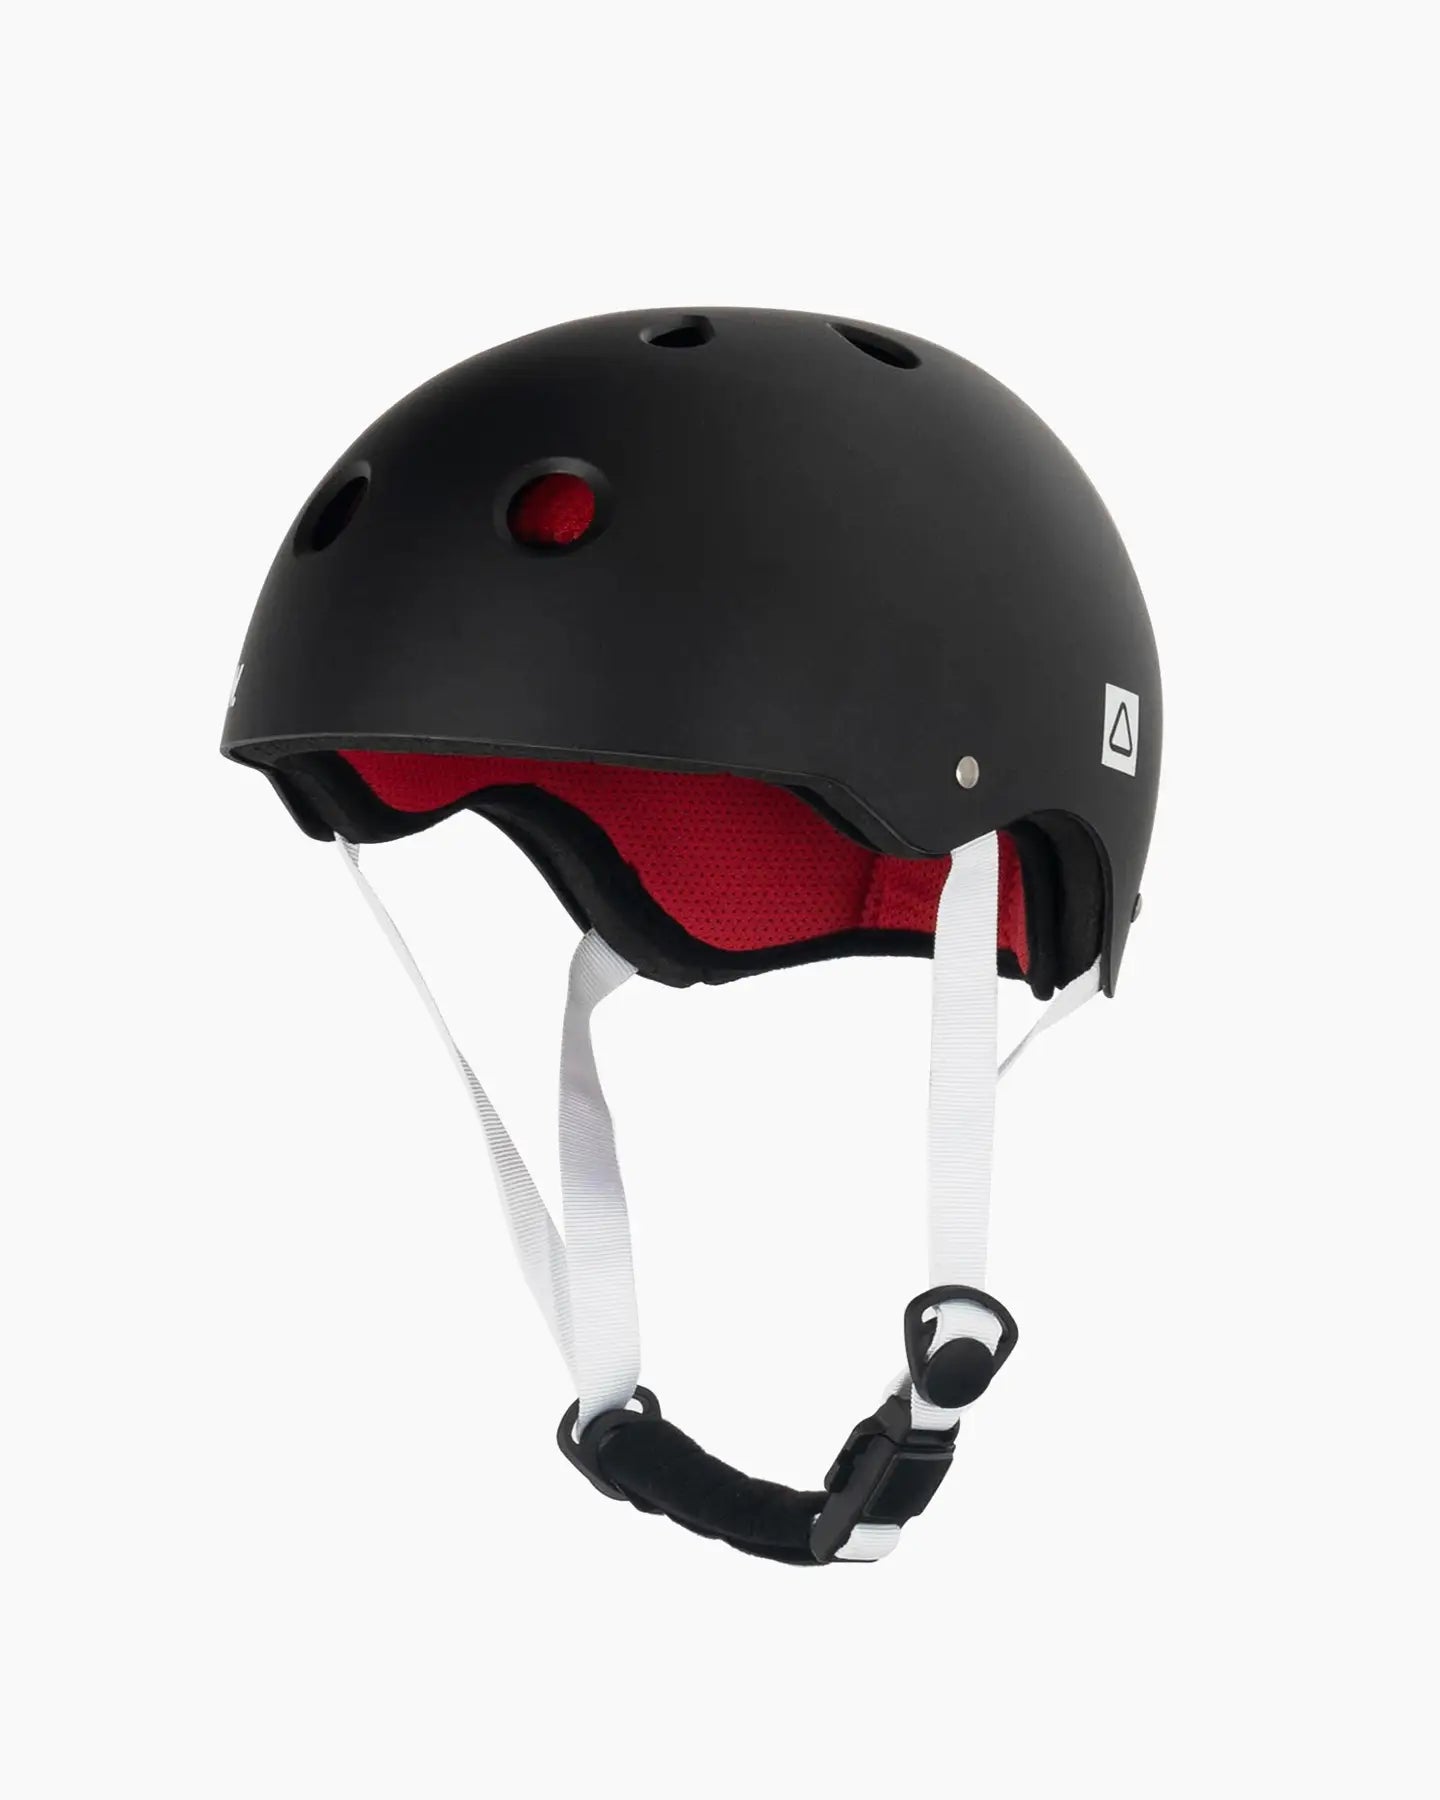 Follow Pro Helmet - Black/Red Side